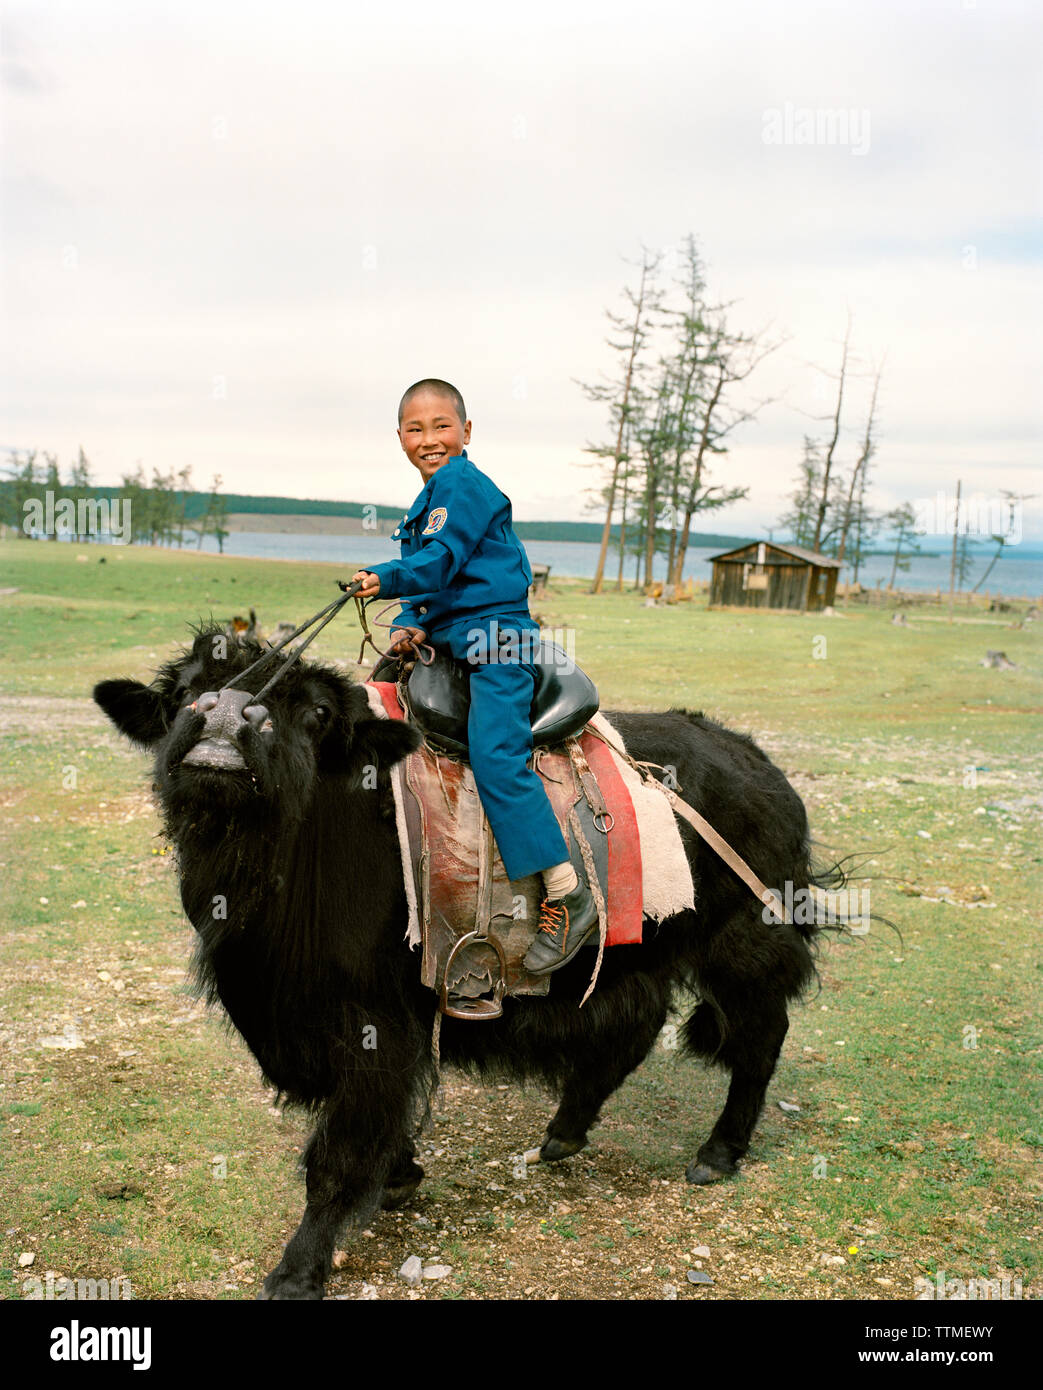 La Mongolie, Batkhuu's home près du lac Khuvsgul, Portrait of a smiling boy riding a yak, Parc National de Khuvsgul Banque D'Images